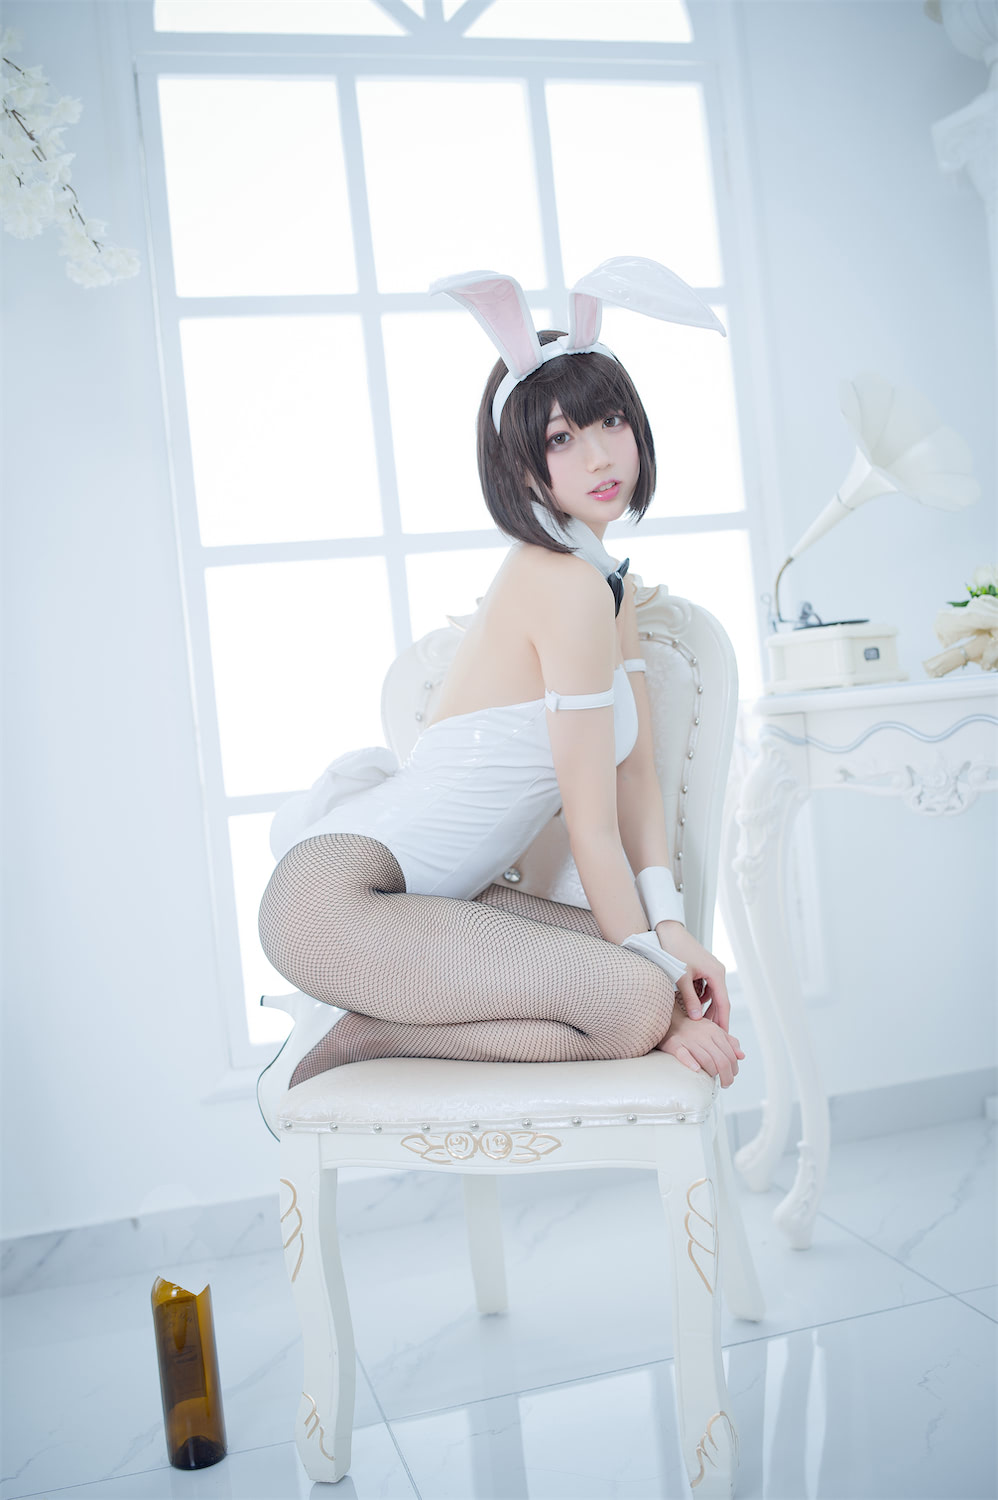 周叽是可爱兔兔加藤惠兔女郎3